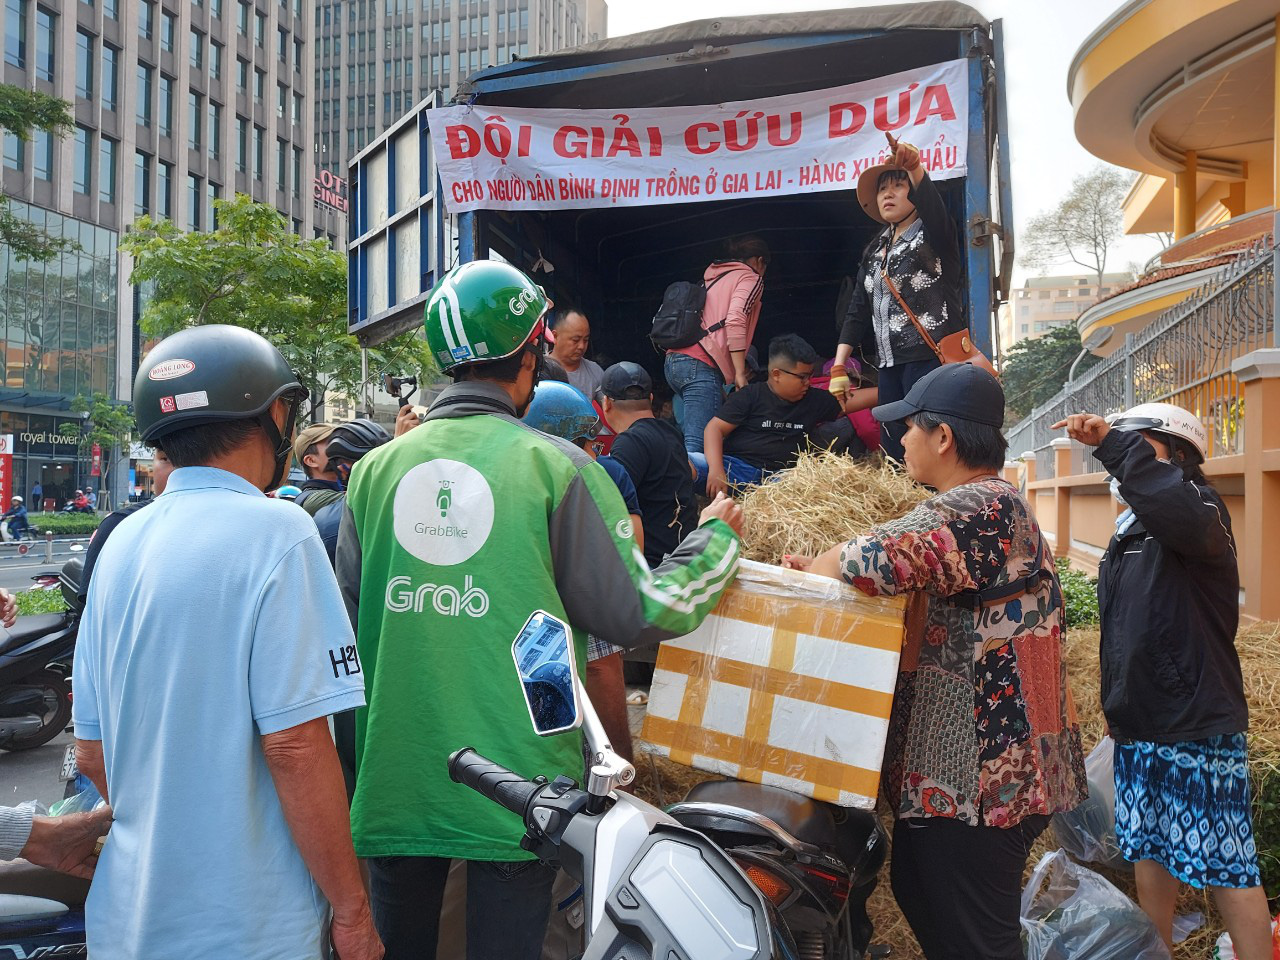 Giải cứu nông sản: Người dân Sài Gòn háo hức nhận dưa hấu miễn phí bằng lời cảm ơn - Ảnh 4.